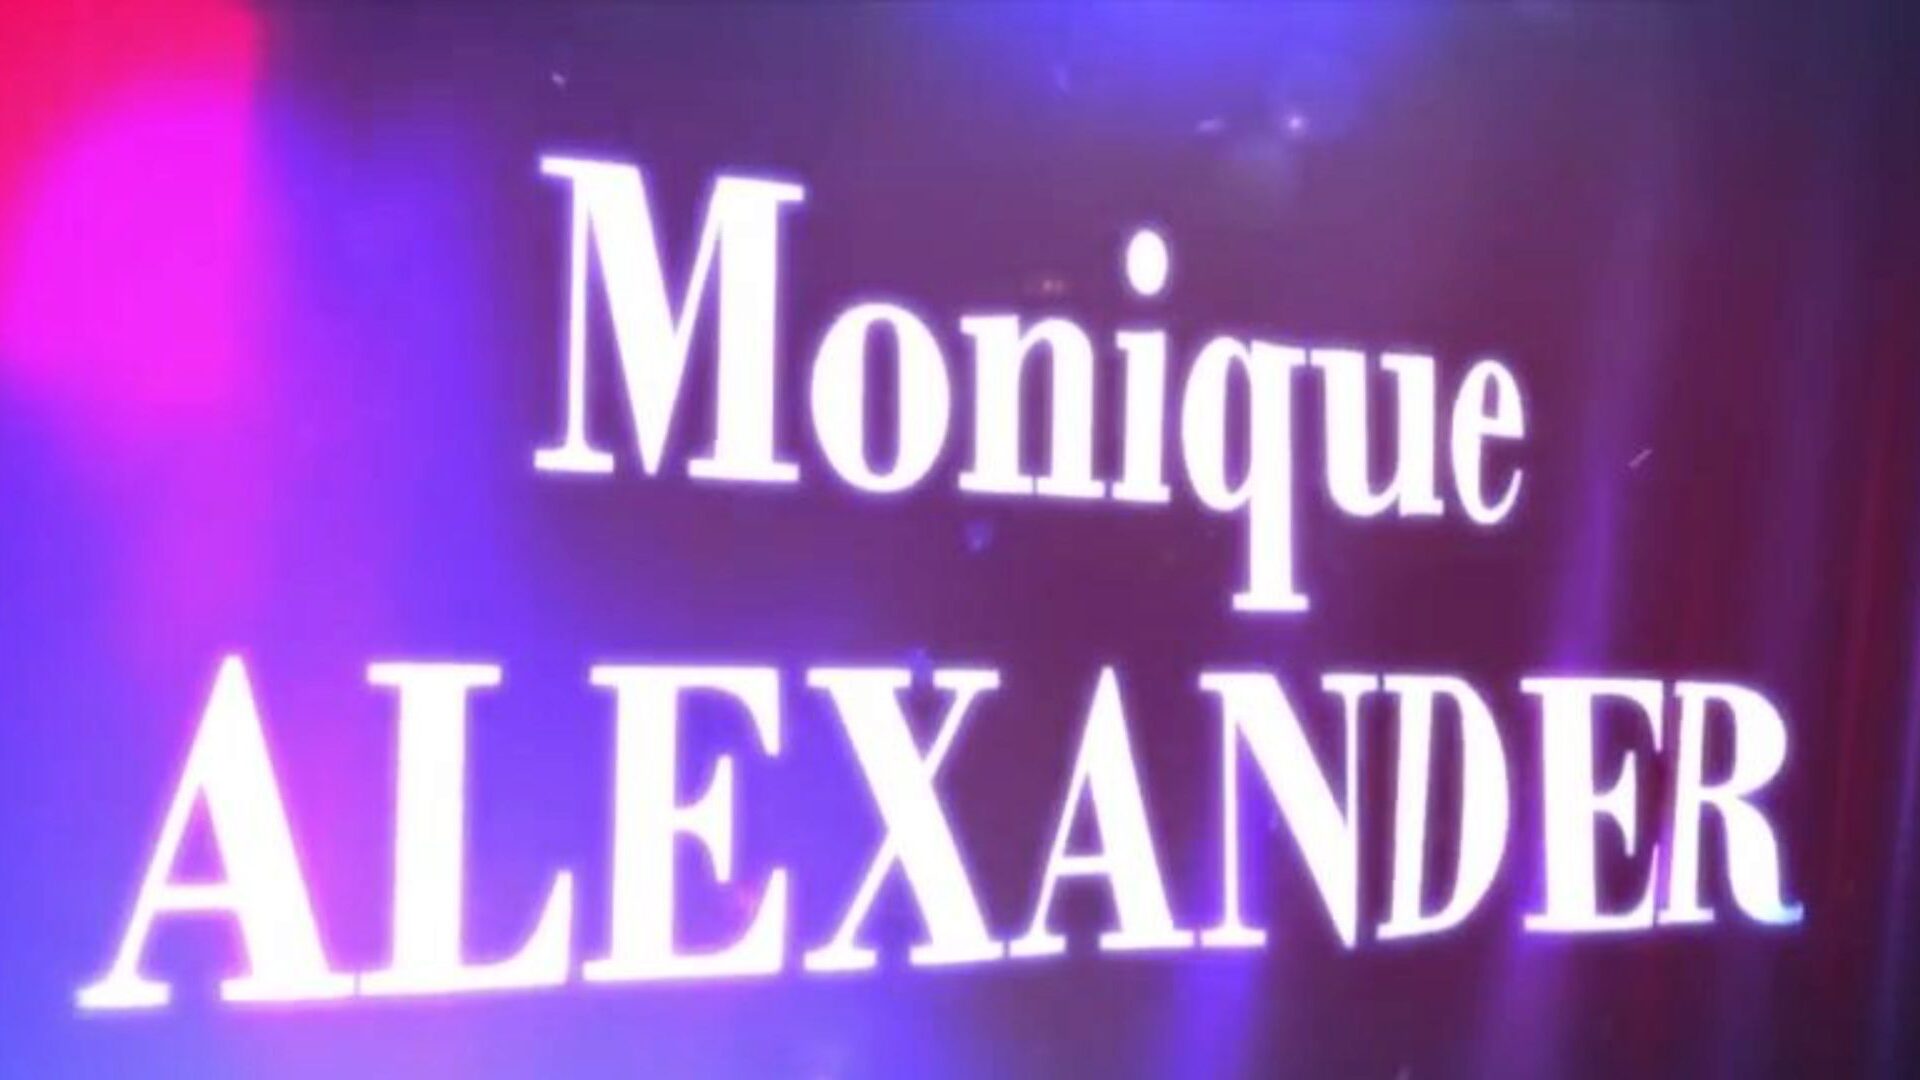 brazzers - berättelser om riktiga fruar - vad tar hennes så långa scen med monique alexander och xander i huvudrollerna